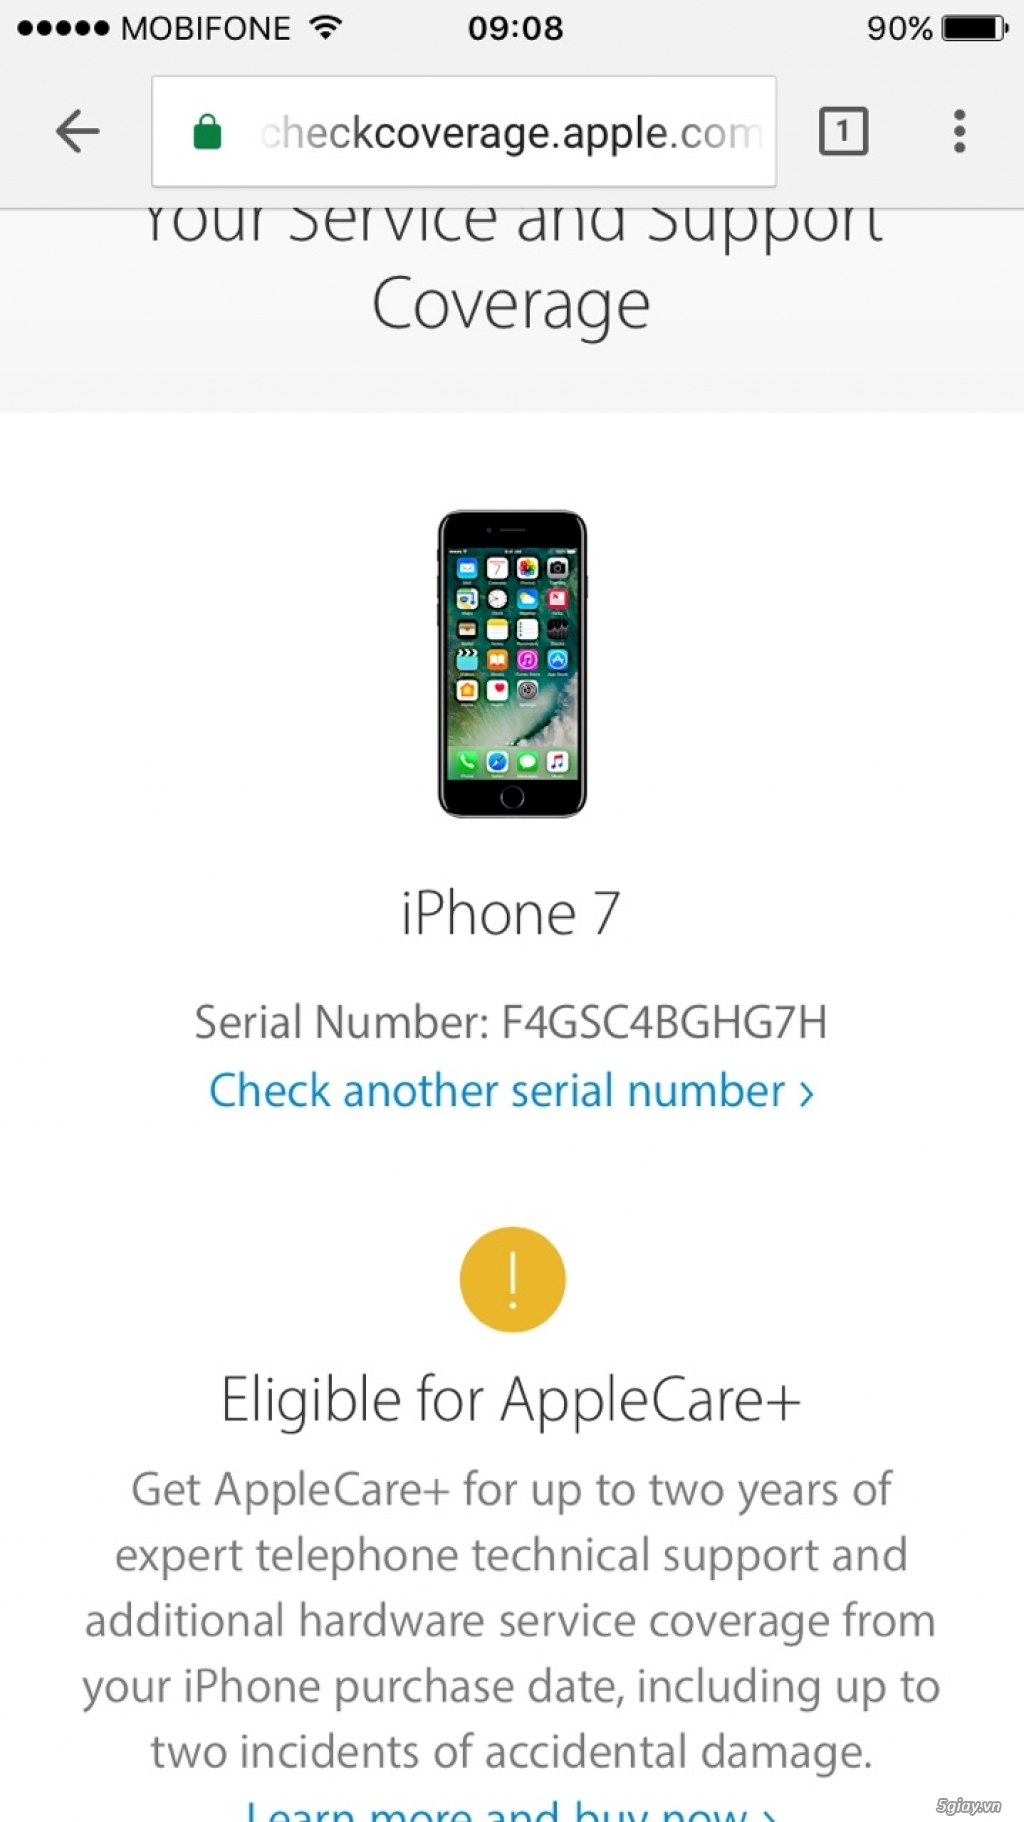 Iphone 7 32Gb Gold ngoại hình 98% - fullbox - 10tr5 - còn bh Apple - 1